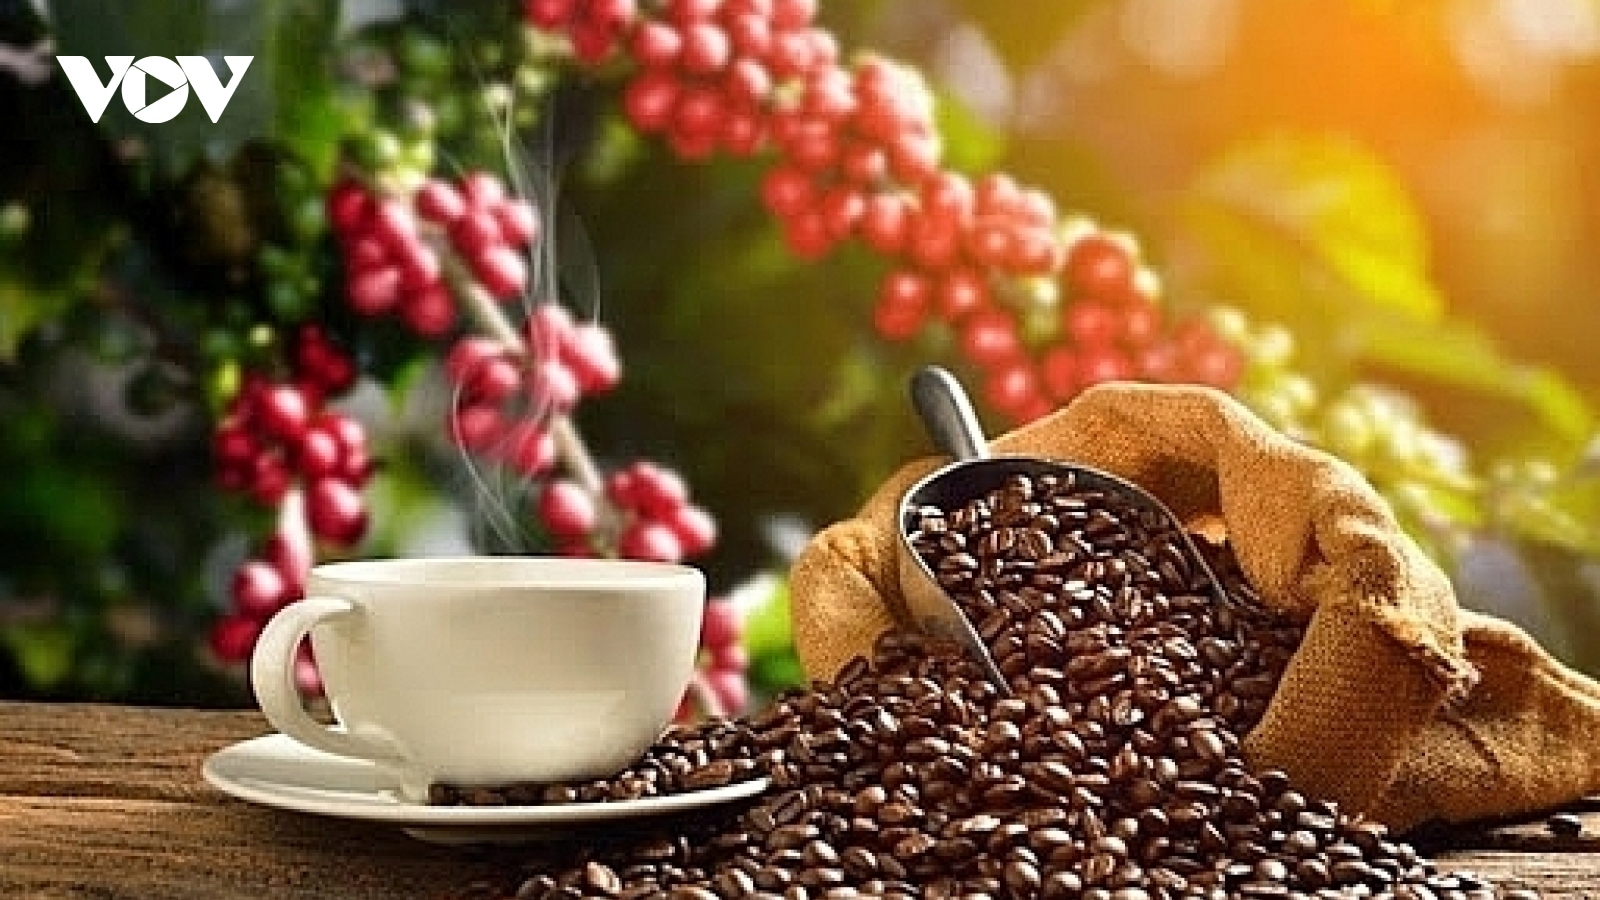 Giá cà phê hôm nay 27/7: Giá cà phê trong nước tăng nhẹ 700 - 800 đồng/kg